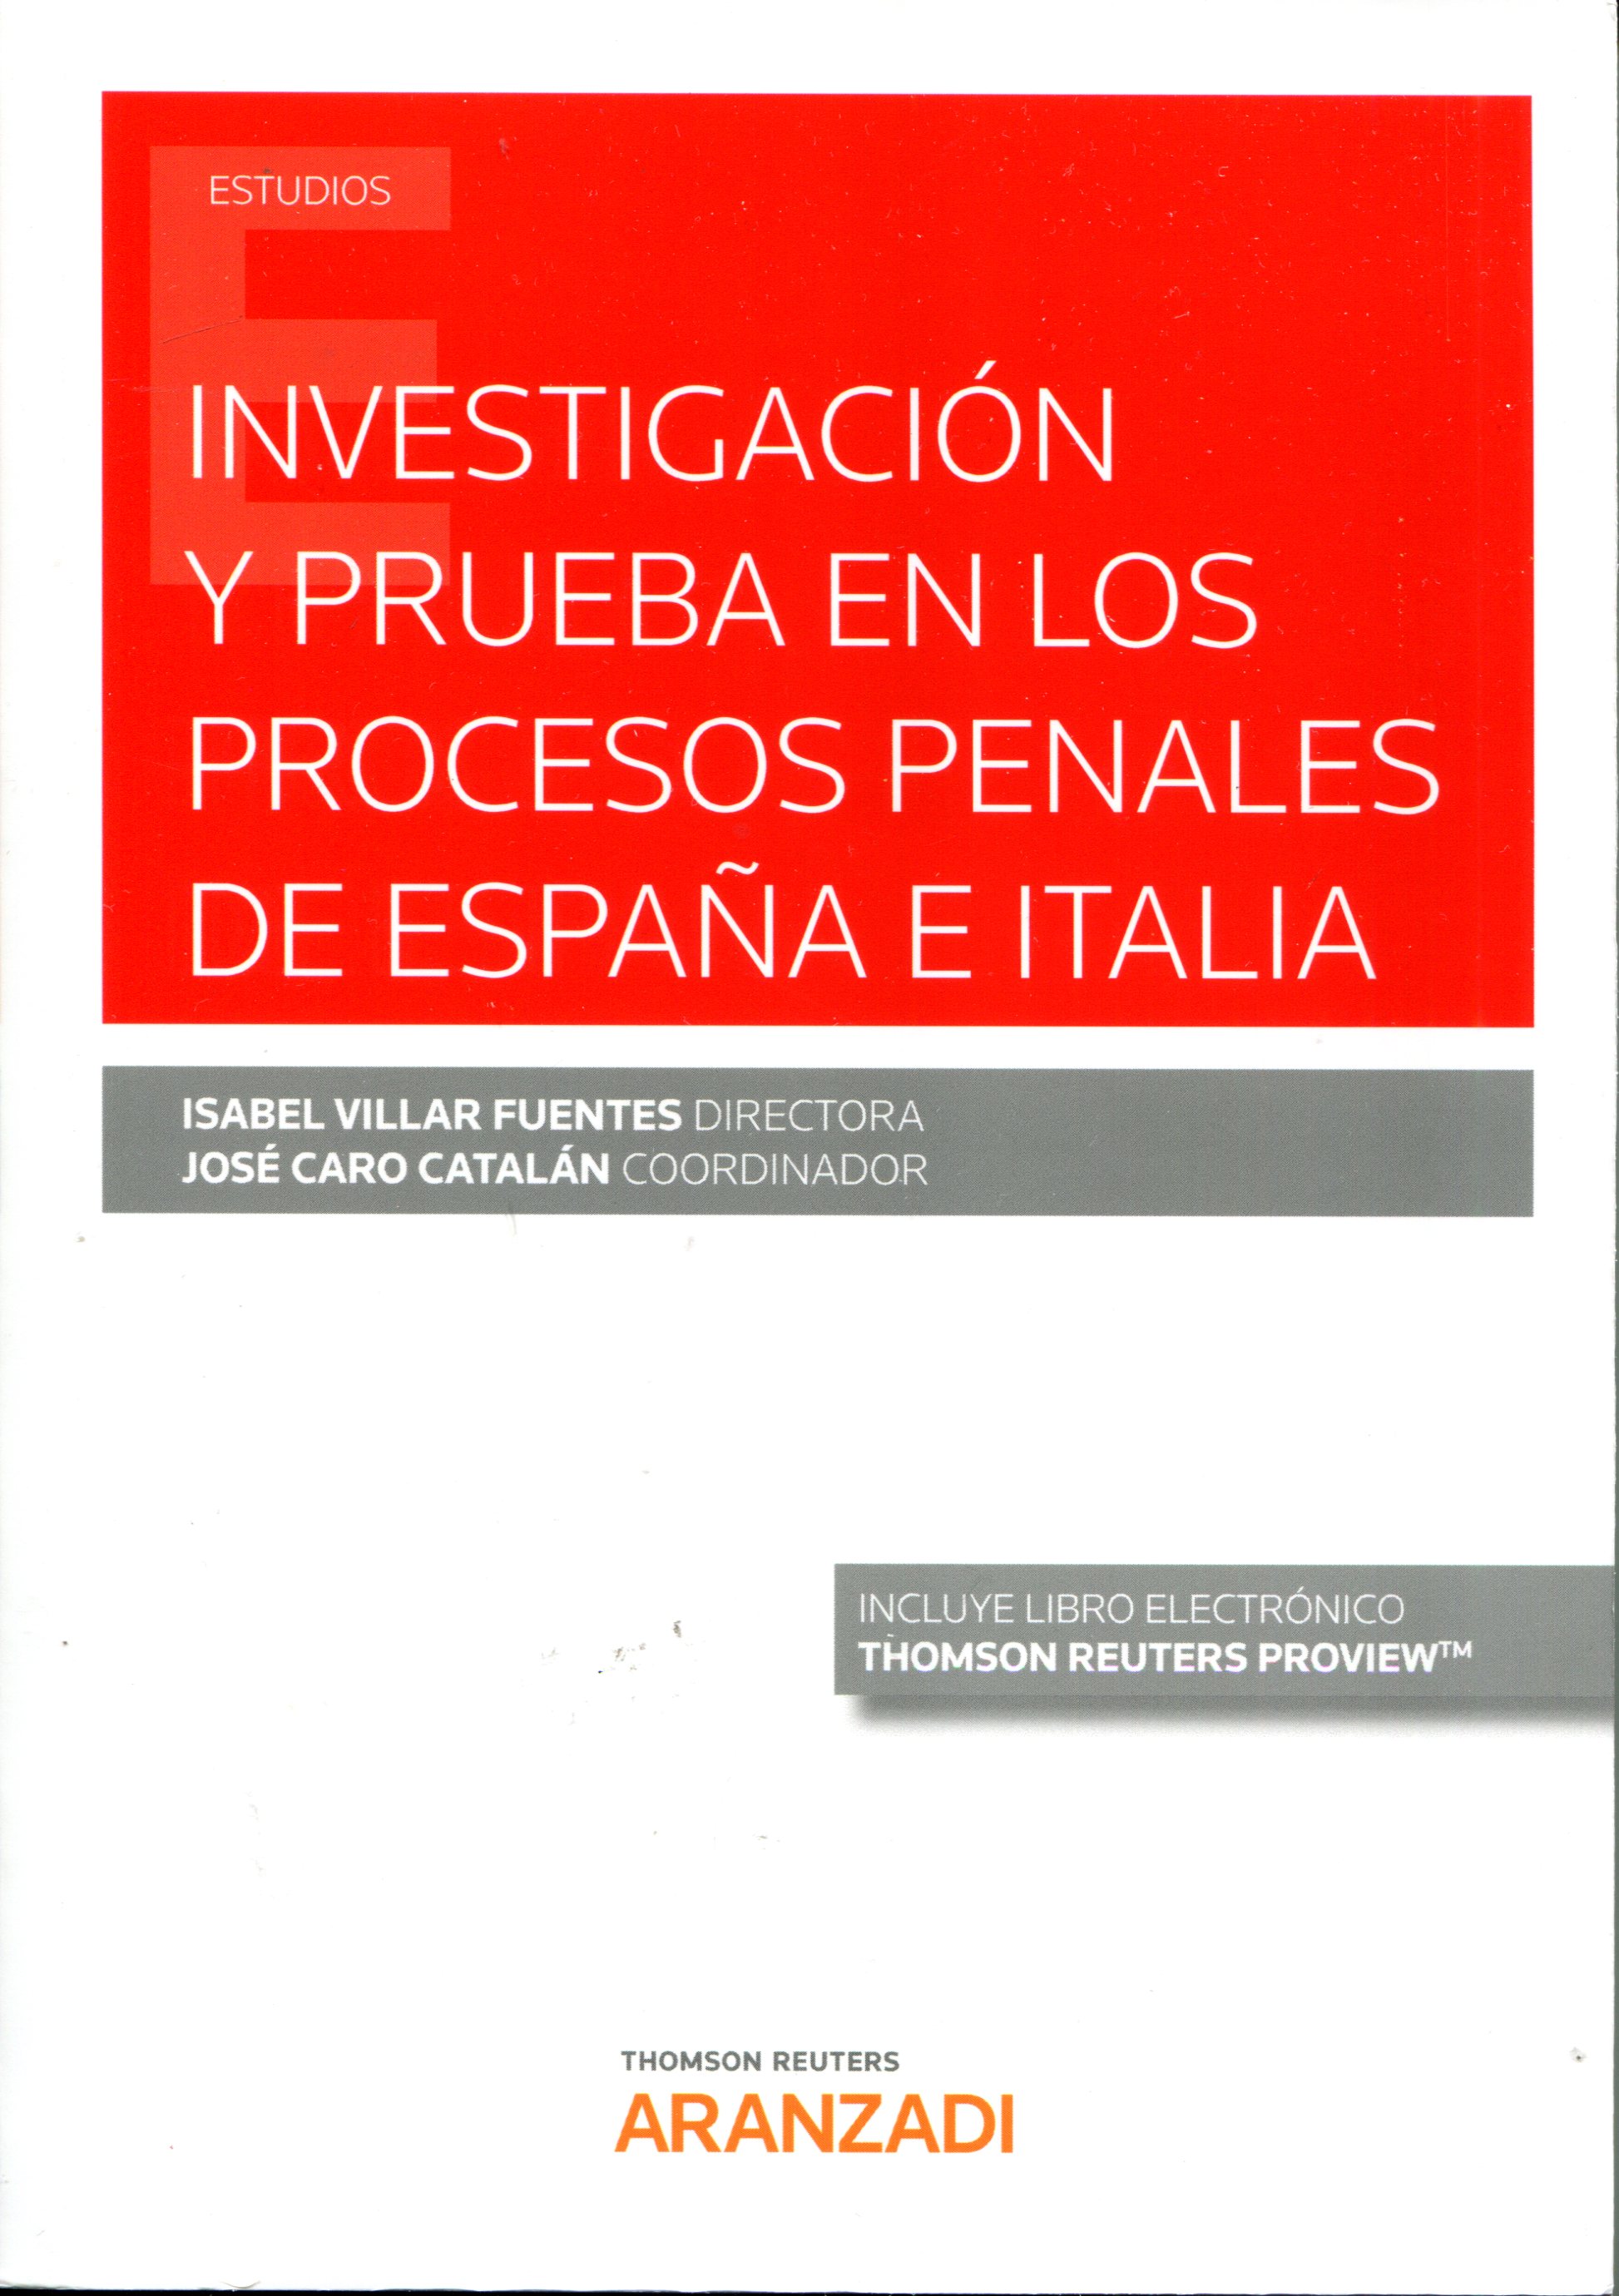 Investigación y prueba en los procesos penales en España e Italia